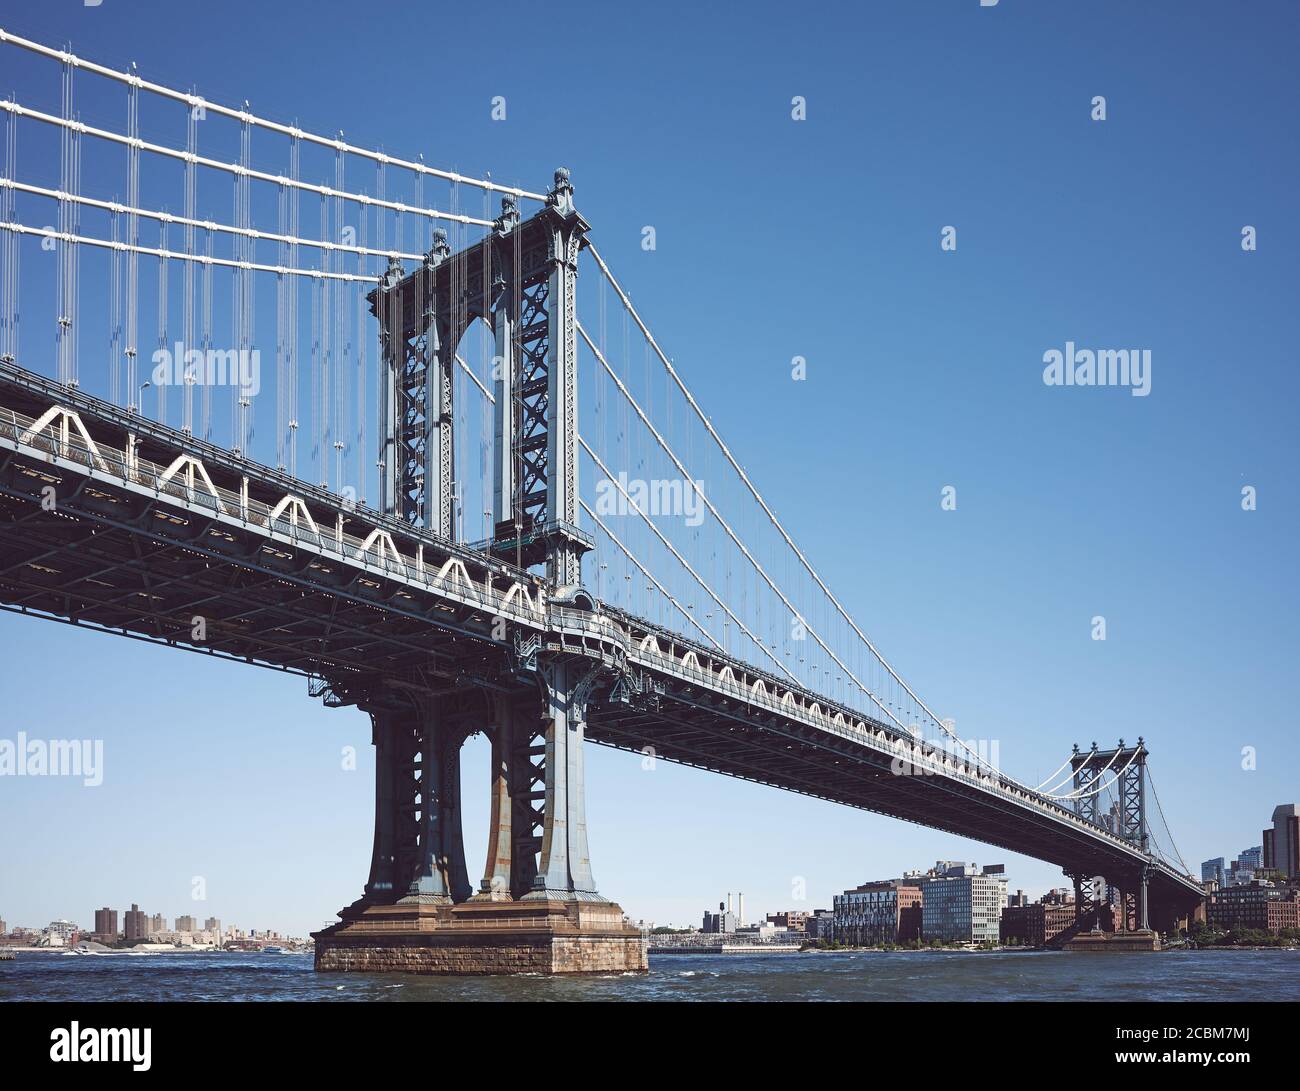 Le pont de Manhattan, image colorée, New York City, États-Unis. Banque D'Images